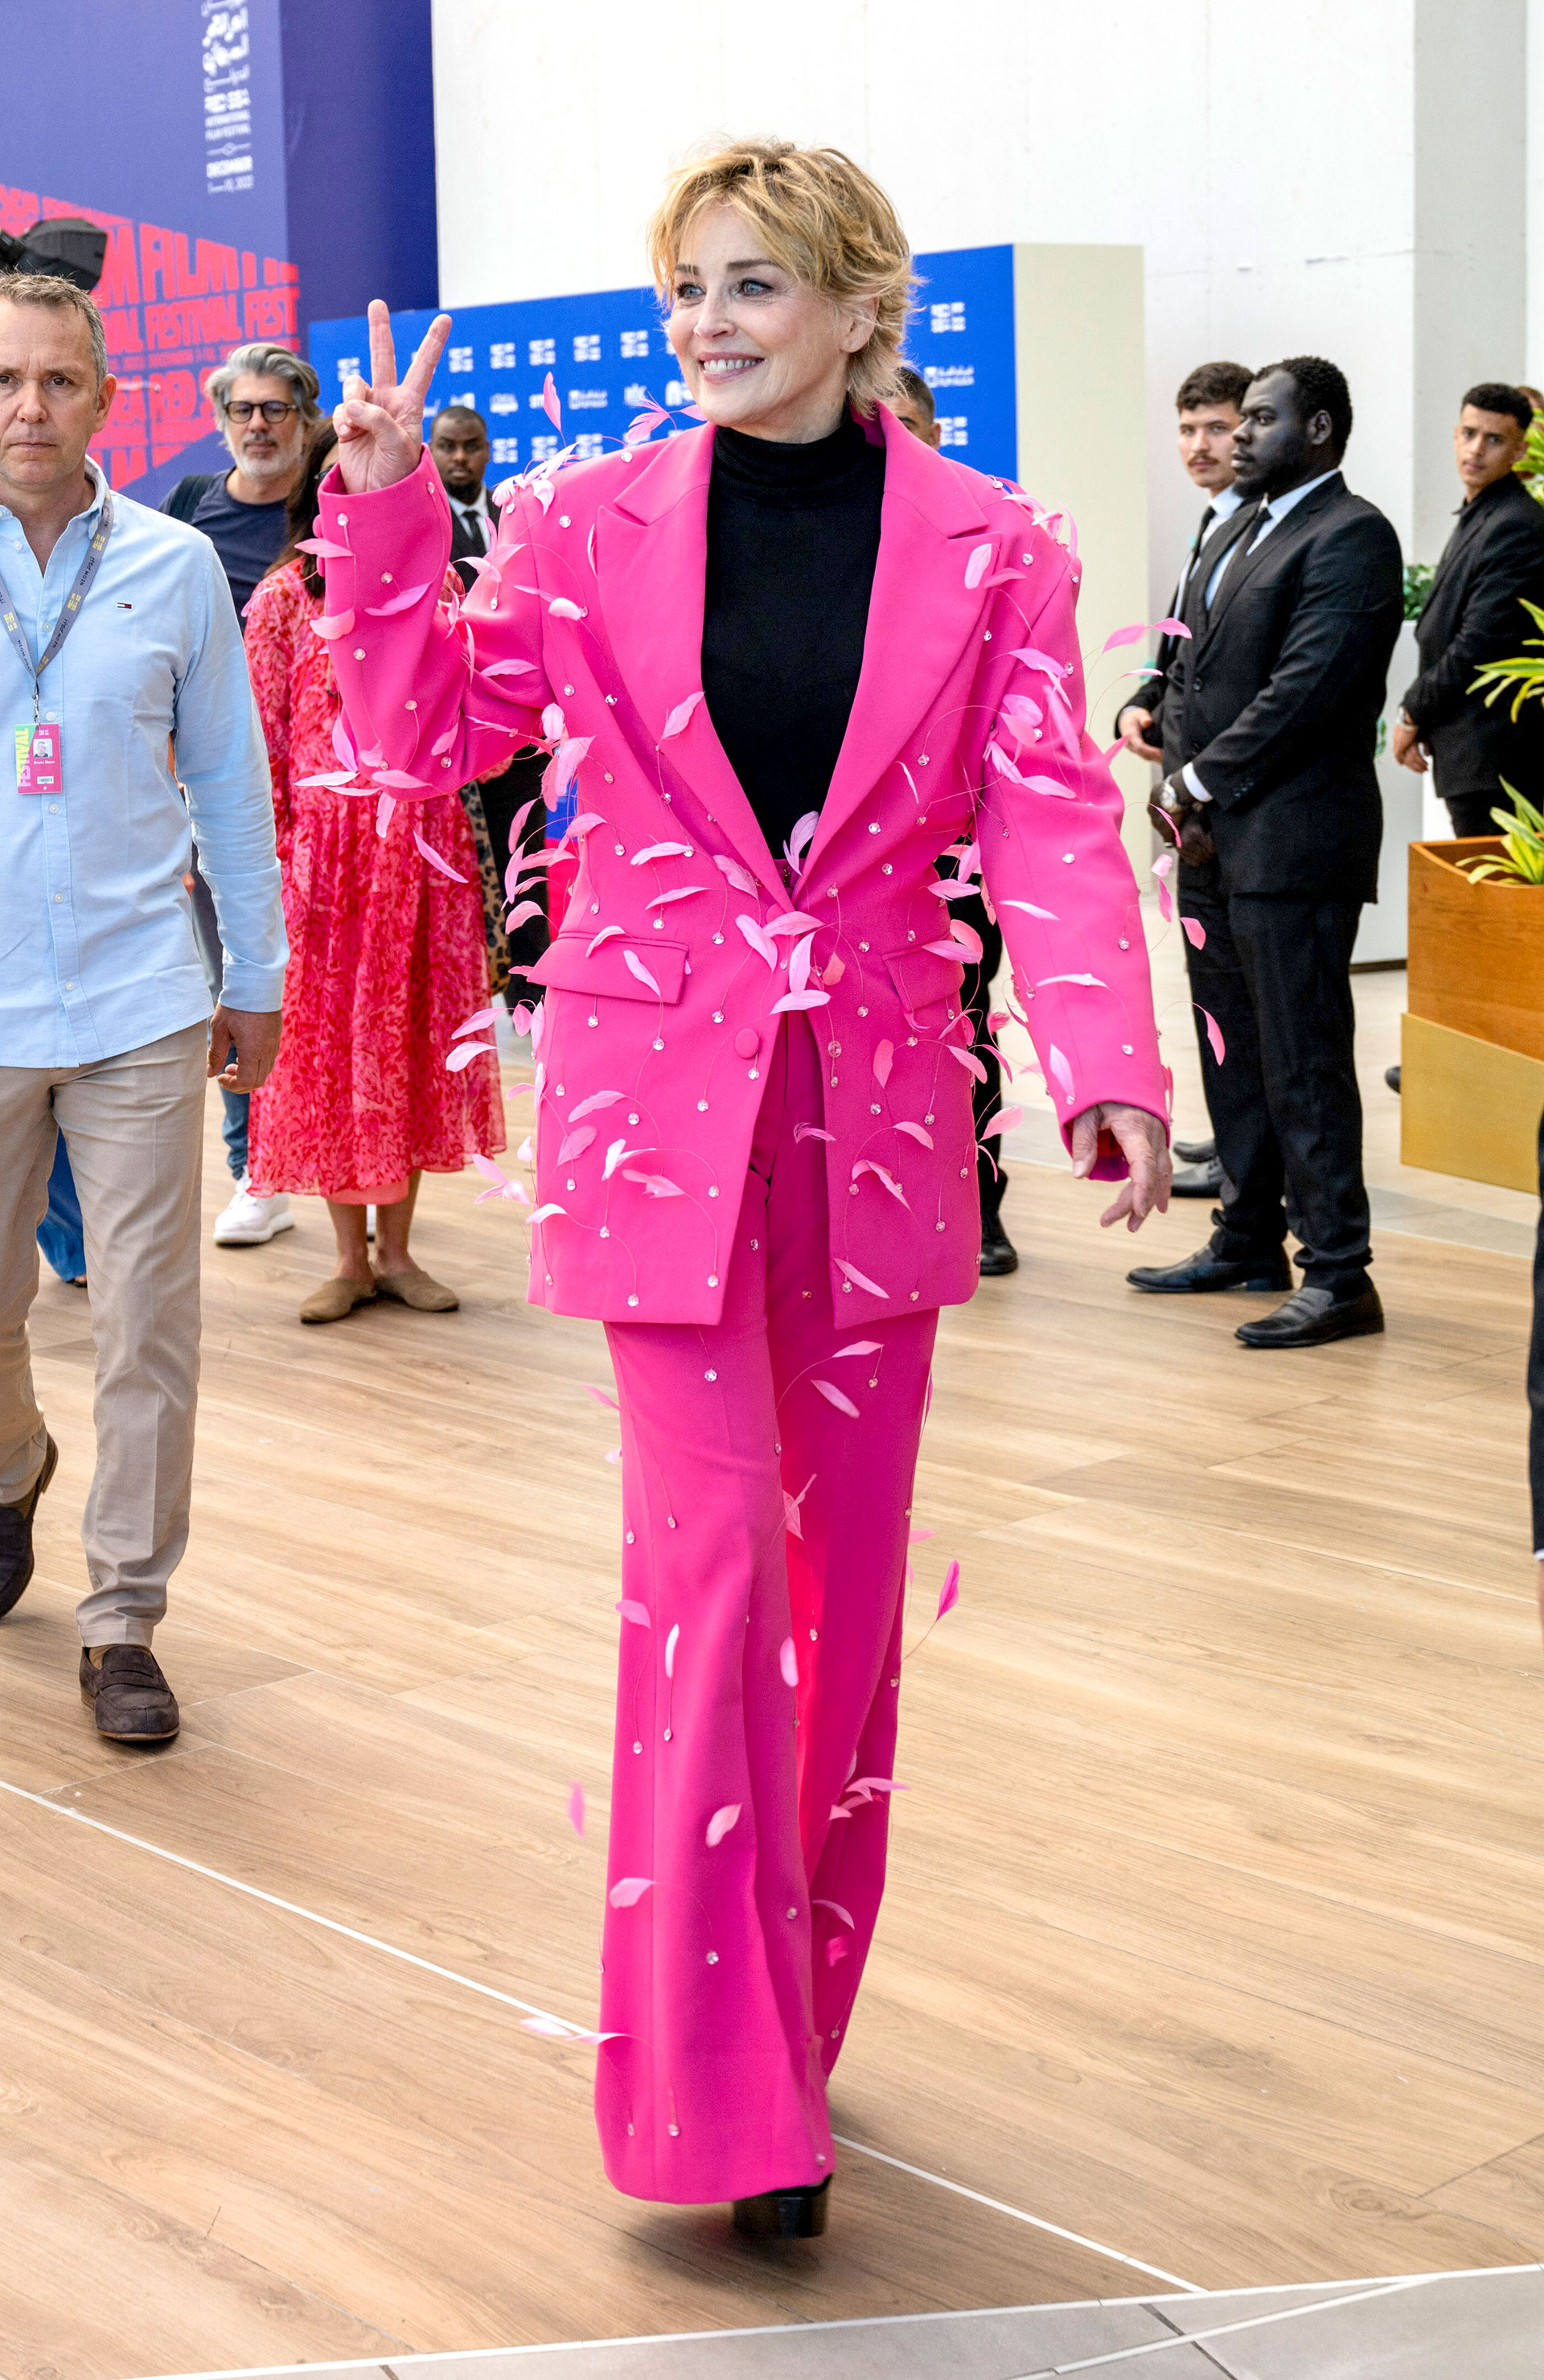 La actriz estadounidense Sharon Stone participó de la segunda edición del Festival Internacional de Cine del Mar Rojo, en Jeddah, Arabia Saudita, enfundada en un conjunto con detalles de plumas (Fotos: The Grosby Group)